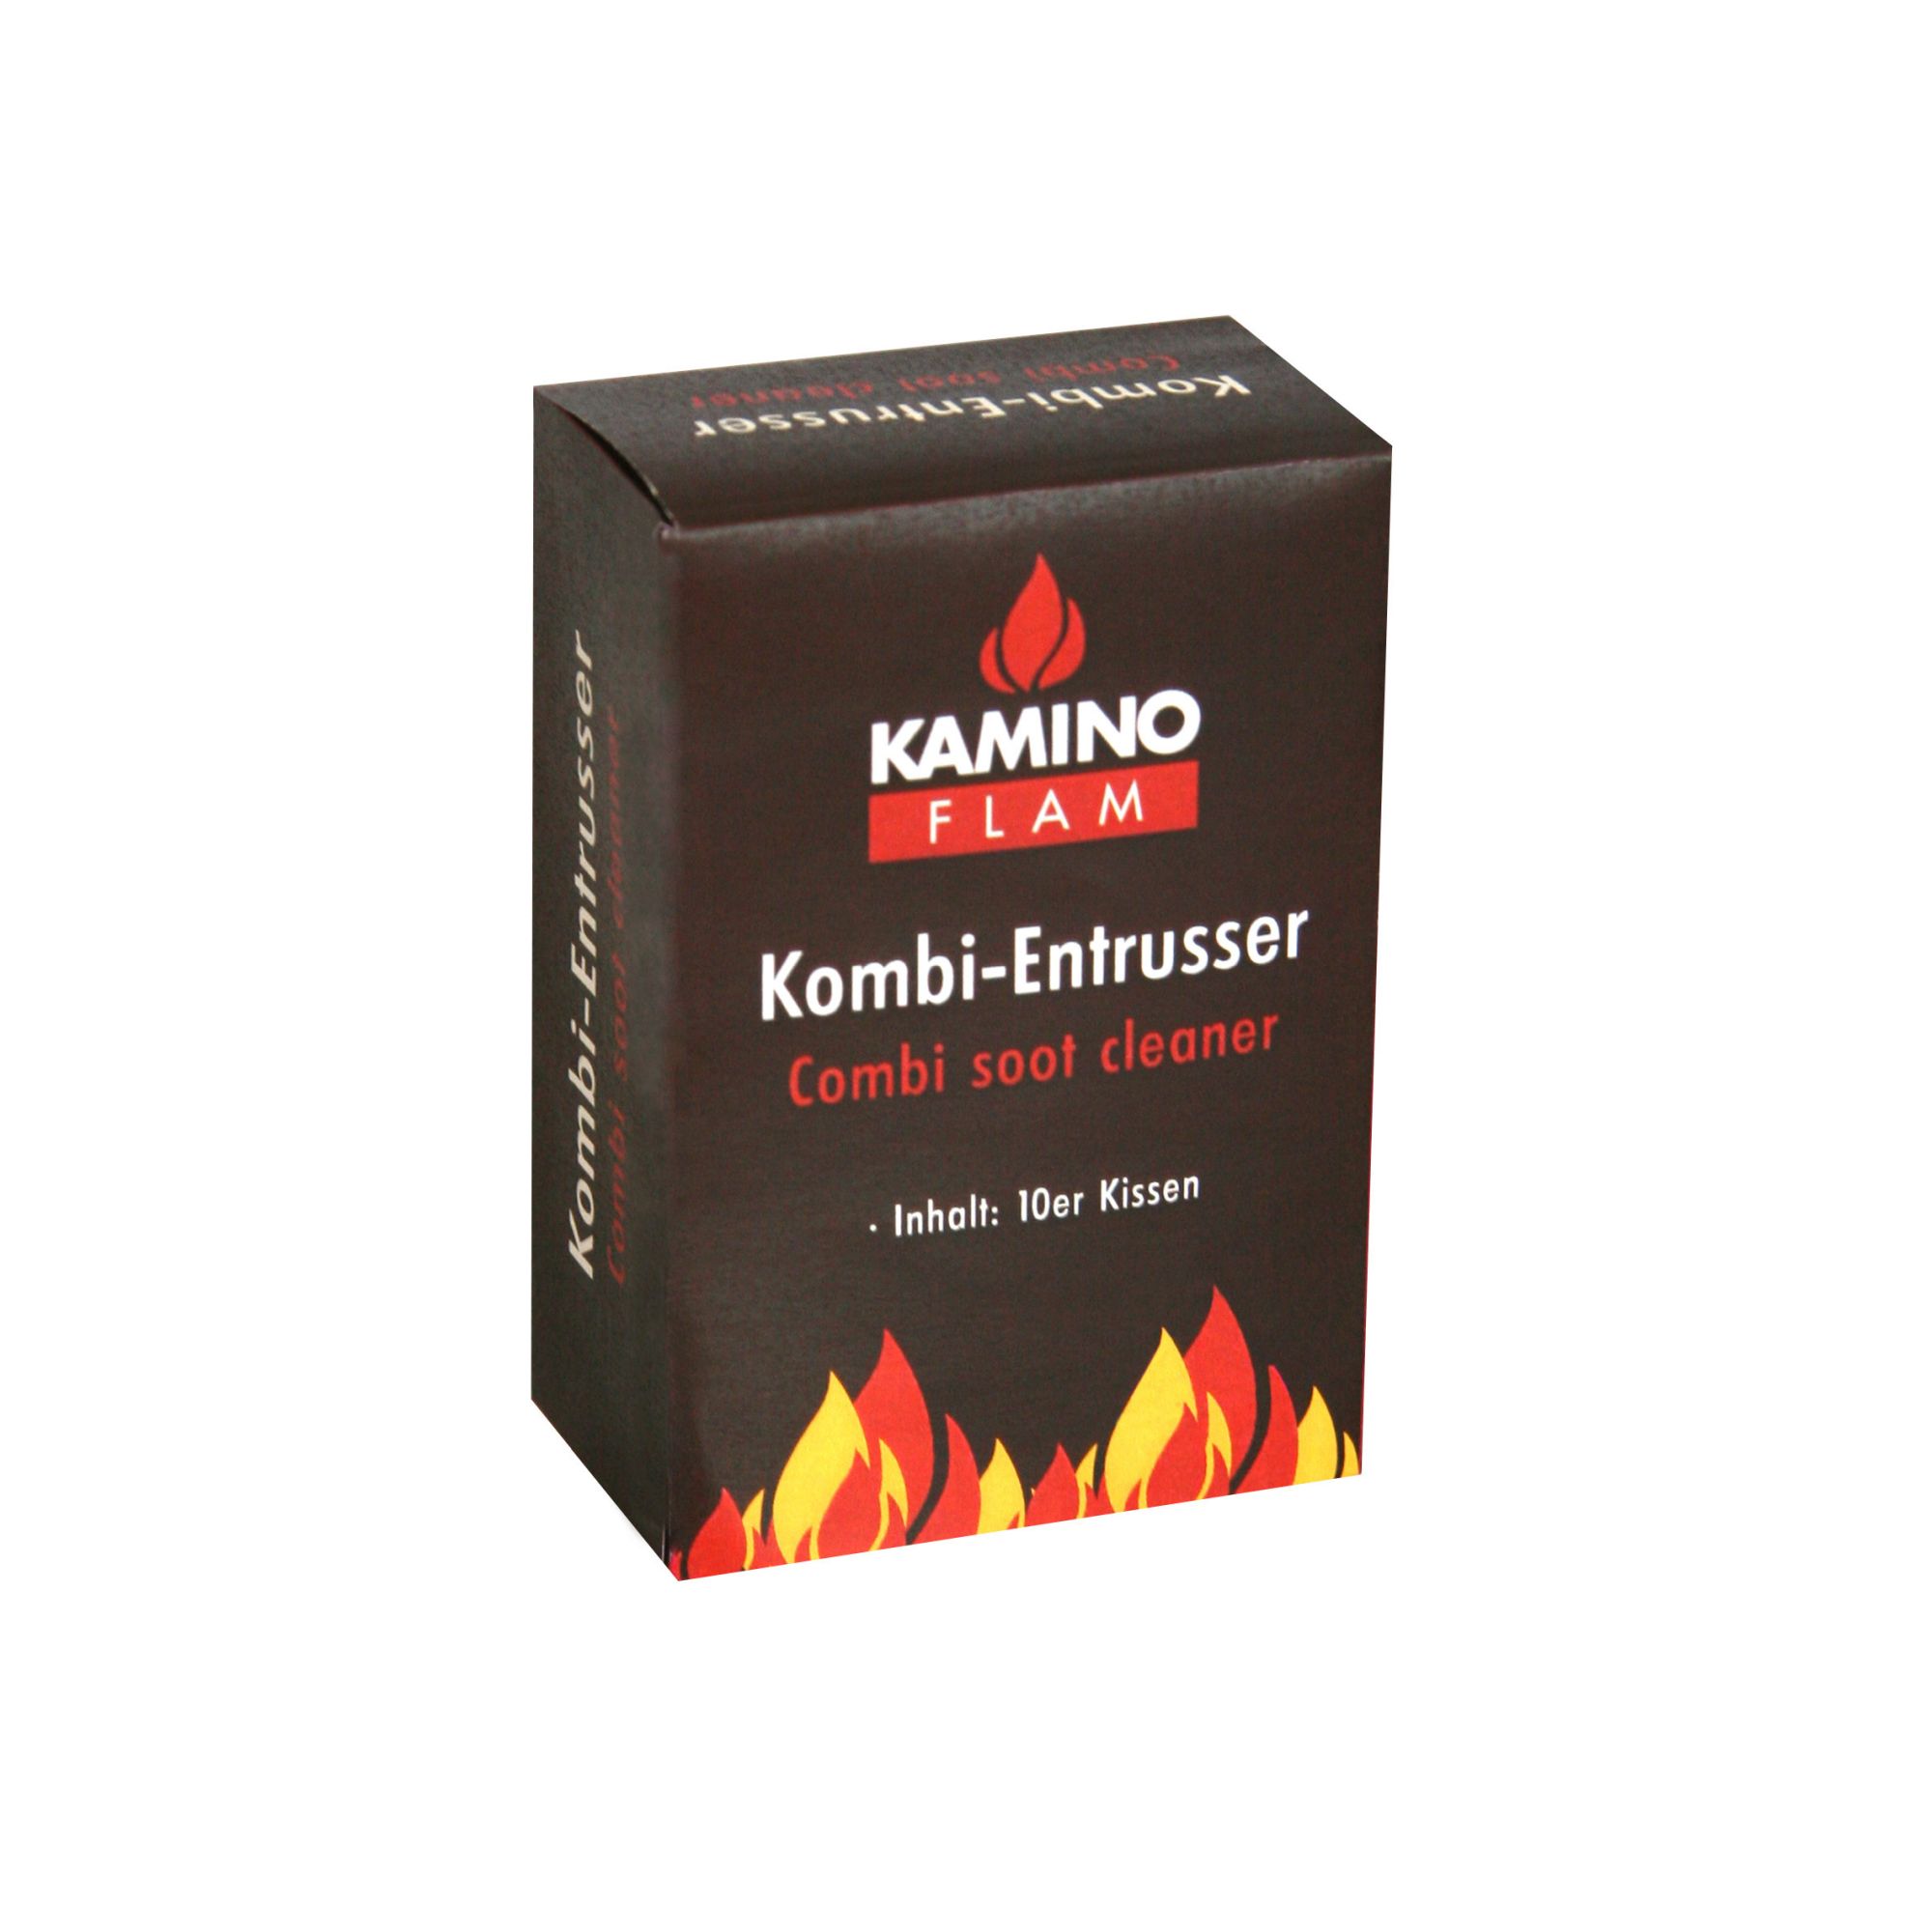 KaminoFlam® - Kombi-Entrußer 10er Kissen 1268 T